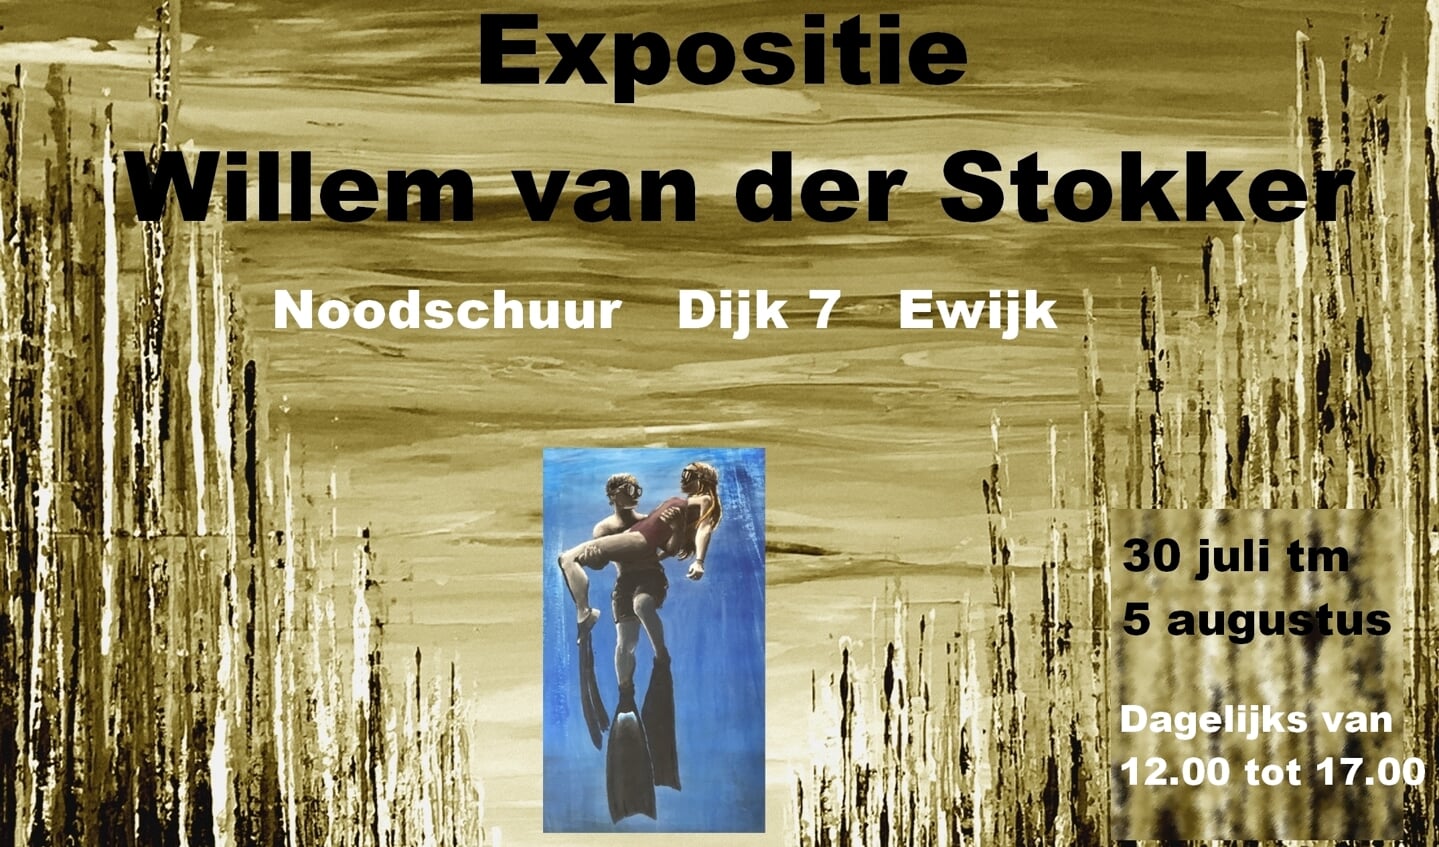 Willem van der Stokker zal zijn werken ter expositie stellen in de Noodschuur te Ewijk